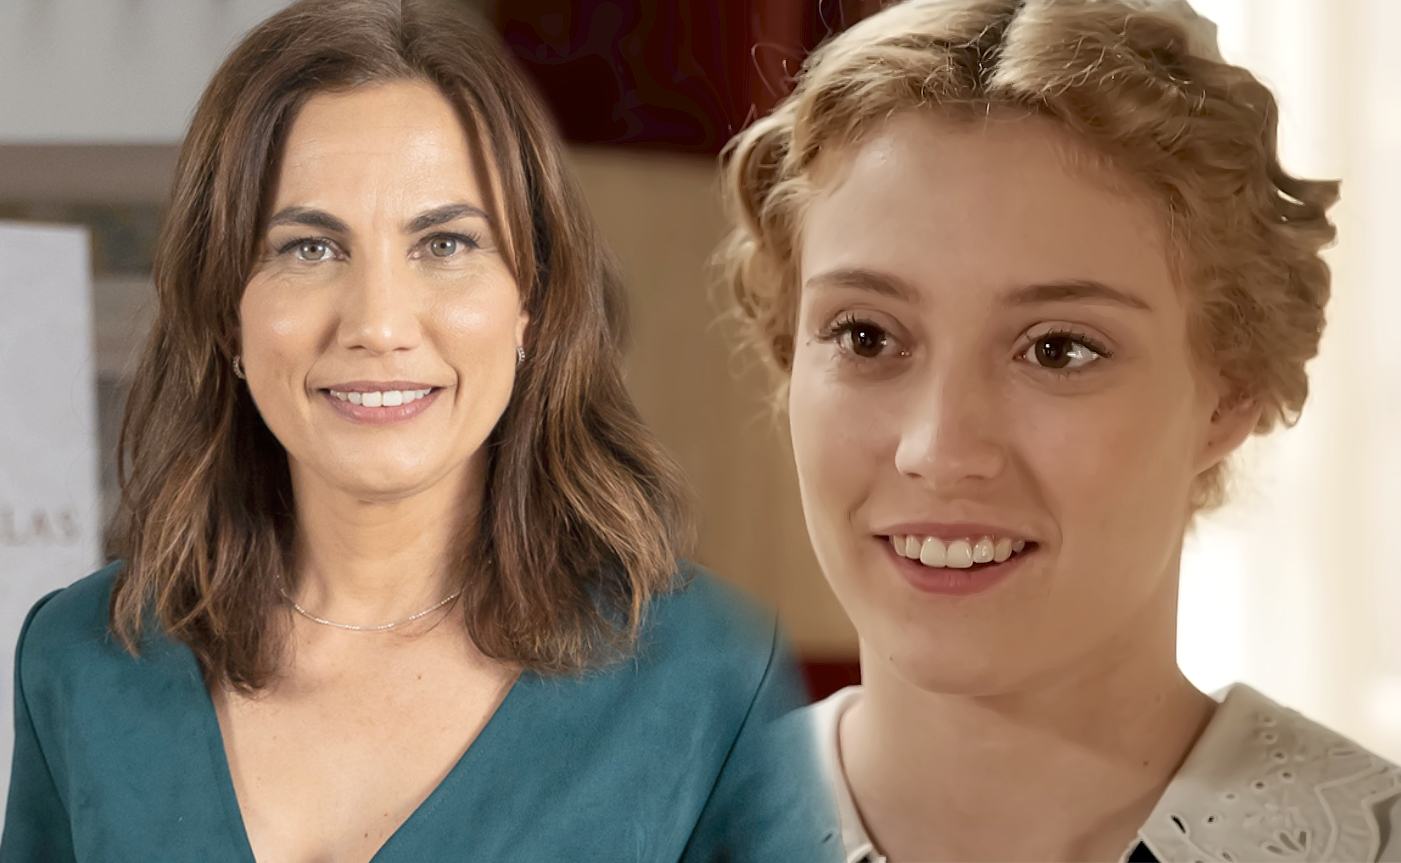 Toni Acosta y Ana Garcés, las protagonistas de 4 estrellas y La Promesa respectivamente, grandes éxitos de ficción de La 1 de RTVE